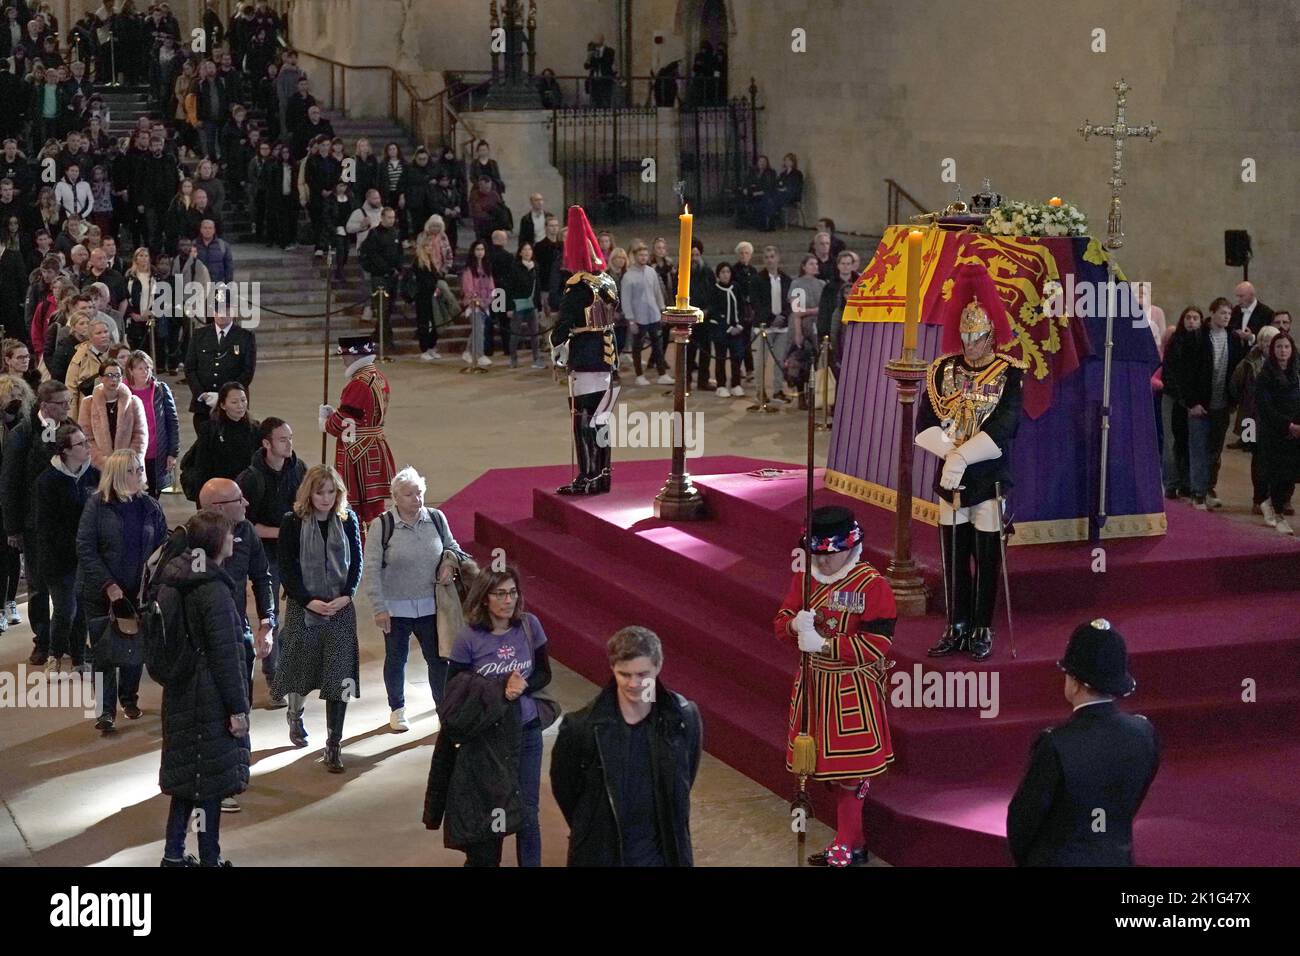 Los miembros del público ven el ataúd de la Reina Isabel II, que se encuentra en el estado en la catafalque de Westminster Hall, en el Palacio de Westminster, Londres, antes de su funeral el lunes. Fecha de la foto: Domingo 18 de septiembre de 2022. Foto de stock